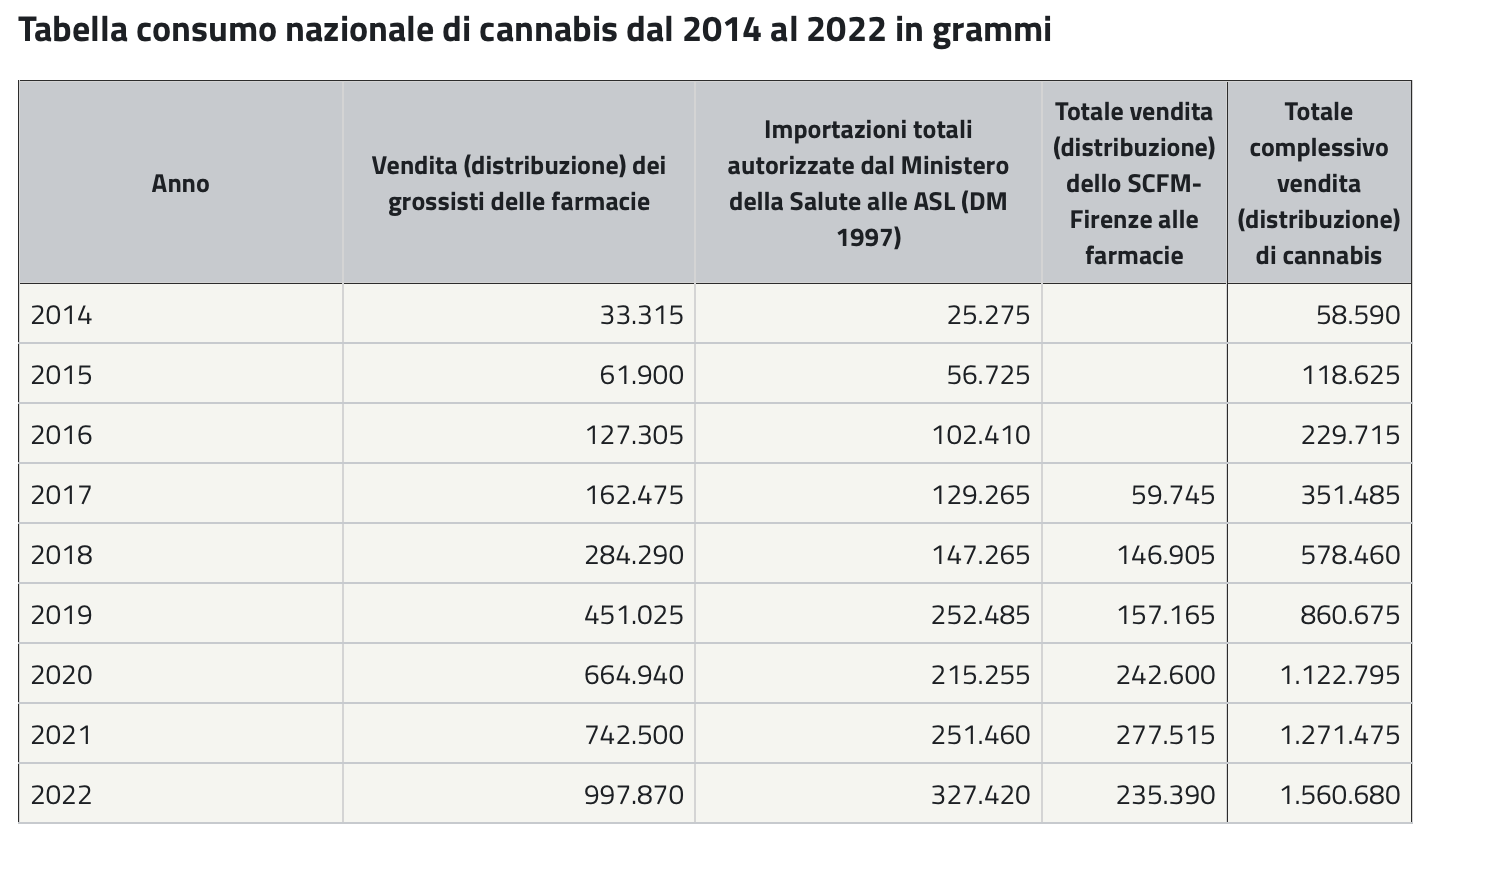 Tabella Consumo nazionale di cannabis dal 2014 al 2022